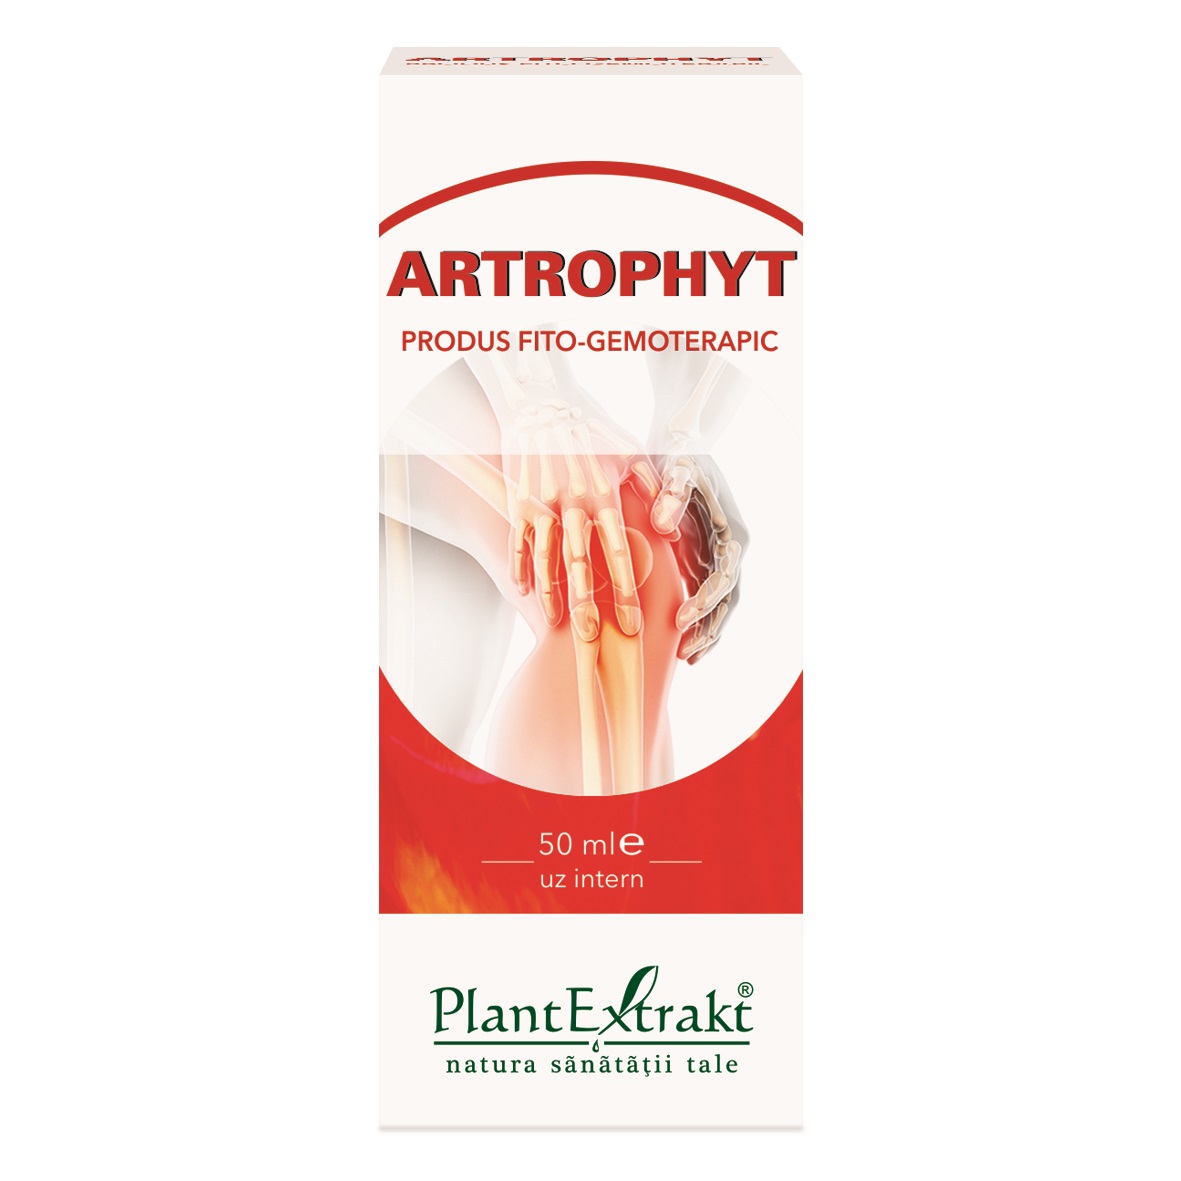 Artrophyt crema sare bazna 200ml - PLANTEXTRAKT